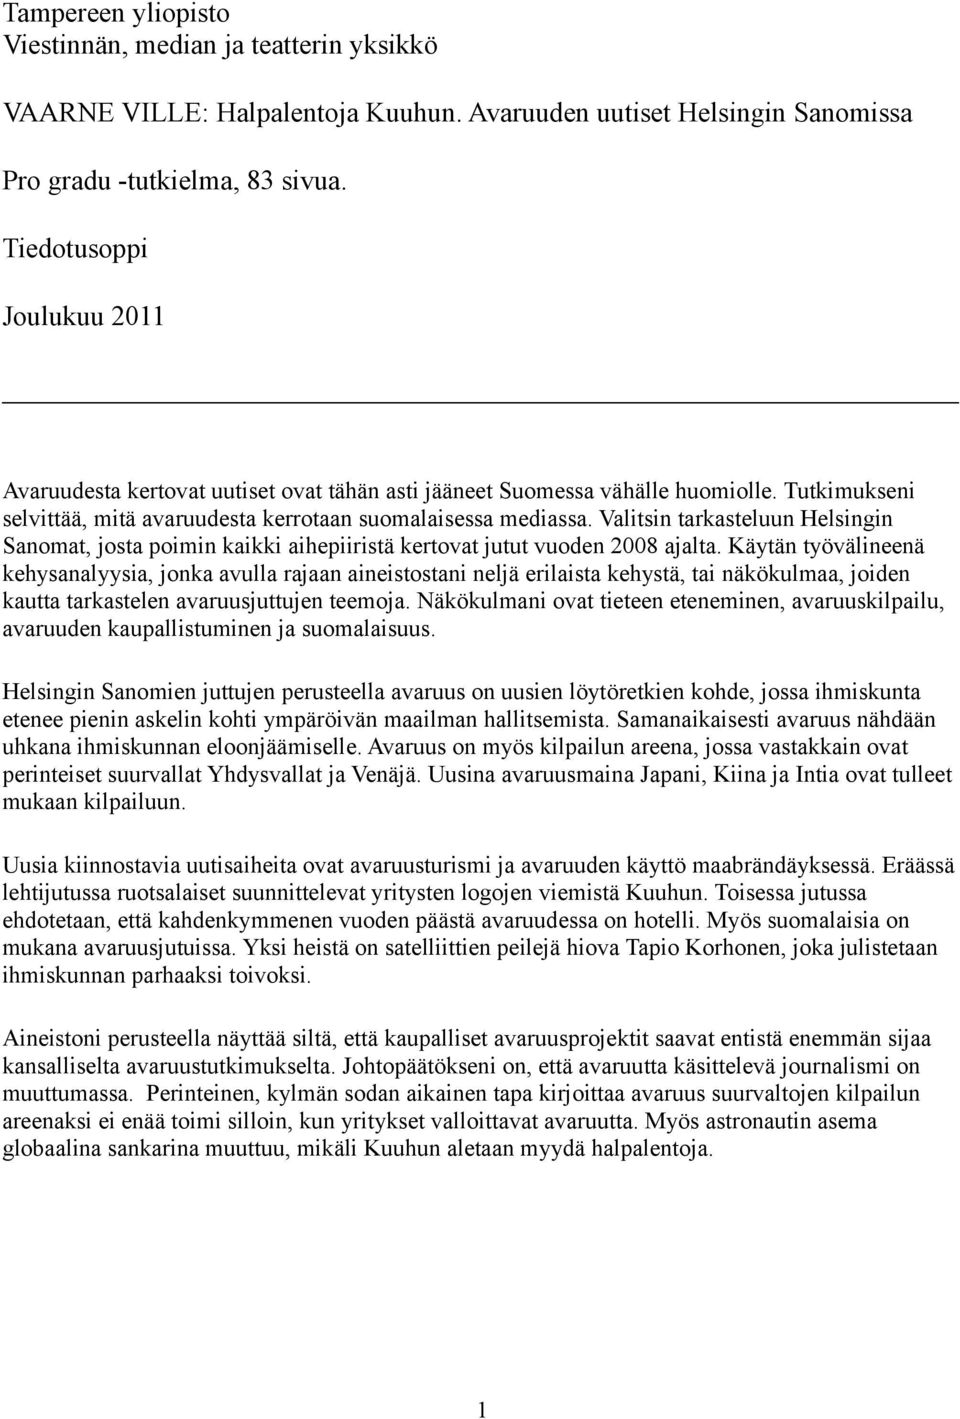 Valitsin tarkasteluun Helsingin Sanomat, josta poimin kaikki aihepiiristä kertovat jutut vuoden 2008 ajalta.